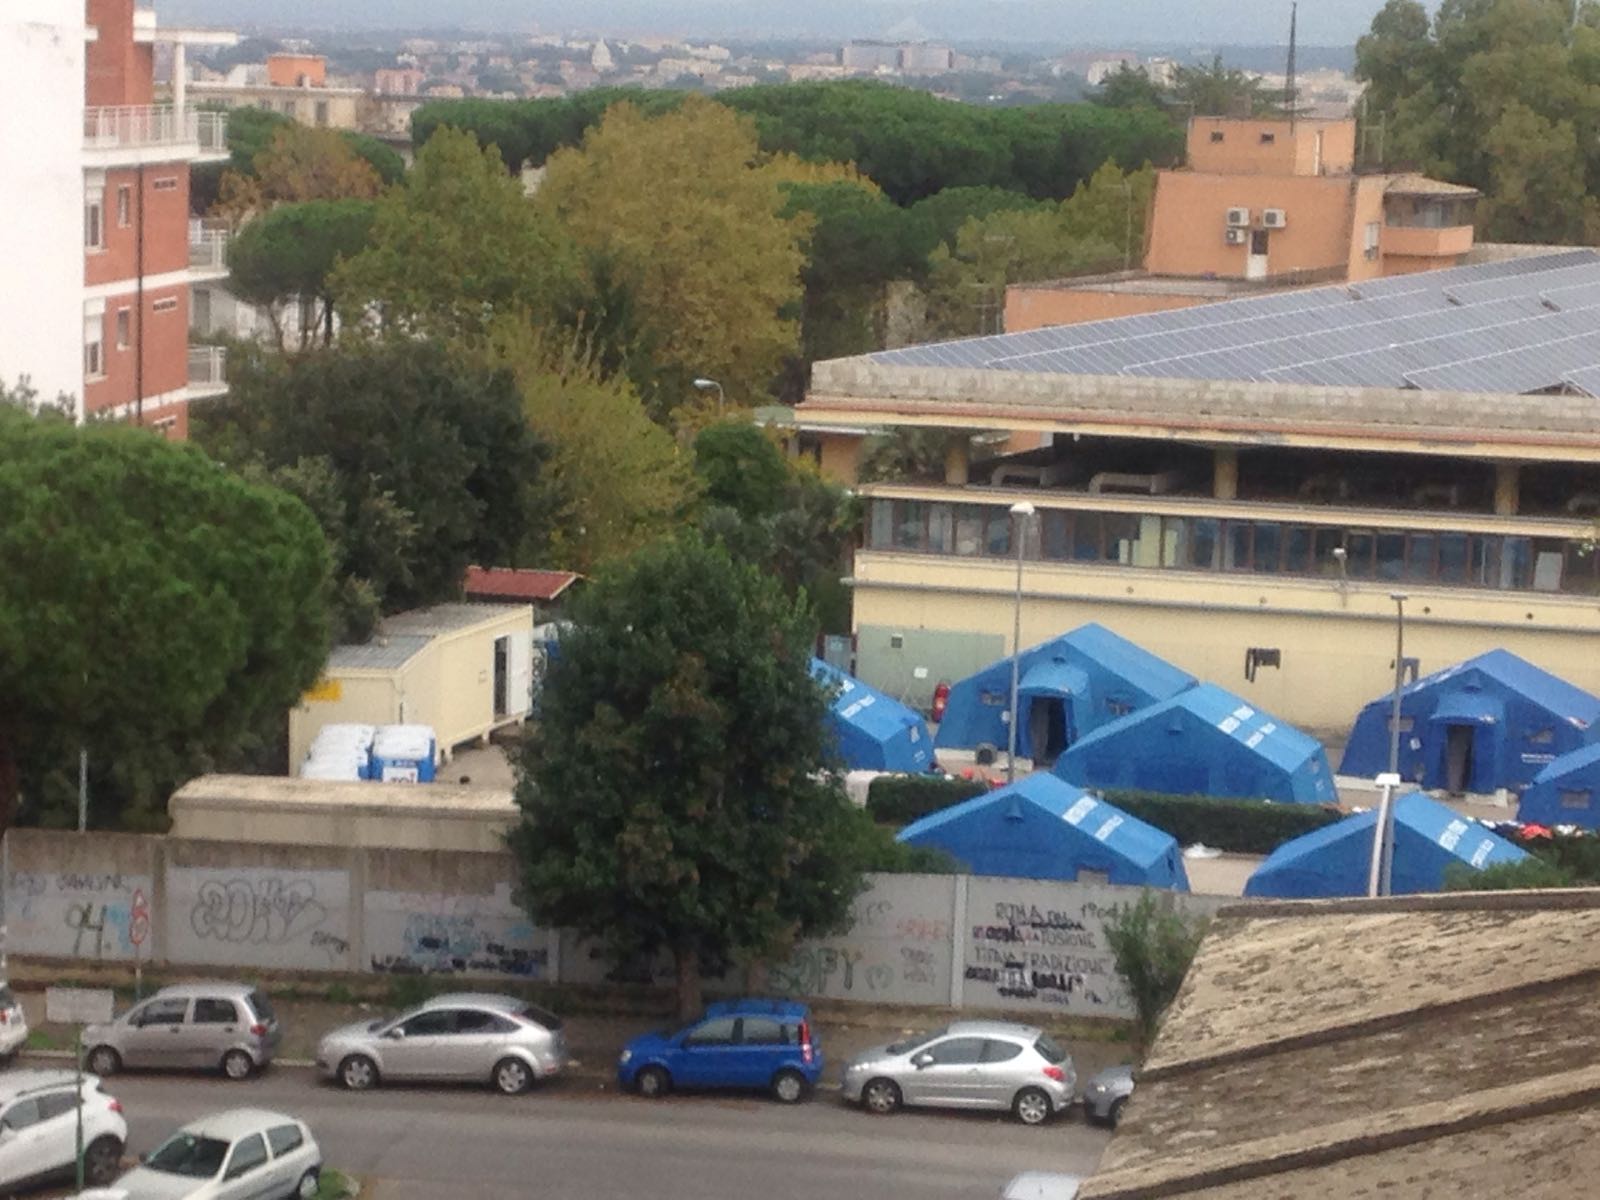 Roma, la Prefettura toglie i migranti alla Croce Rossa